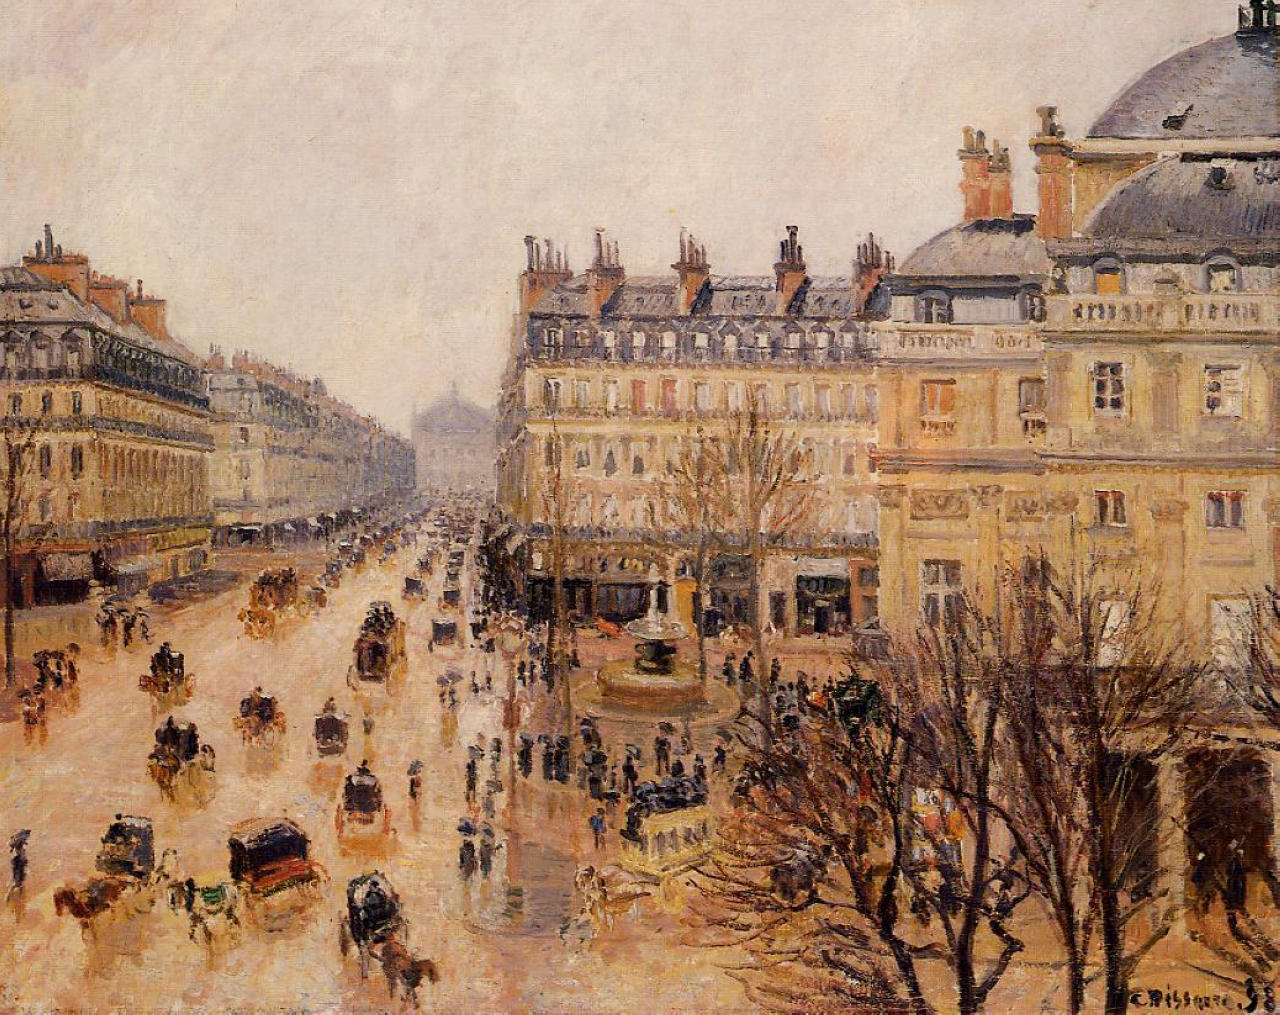 impressionism-art-blog:
“Place du Theatre Francais Rain Effect, Camille Pissarro
”